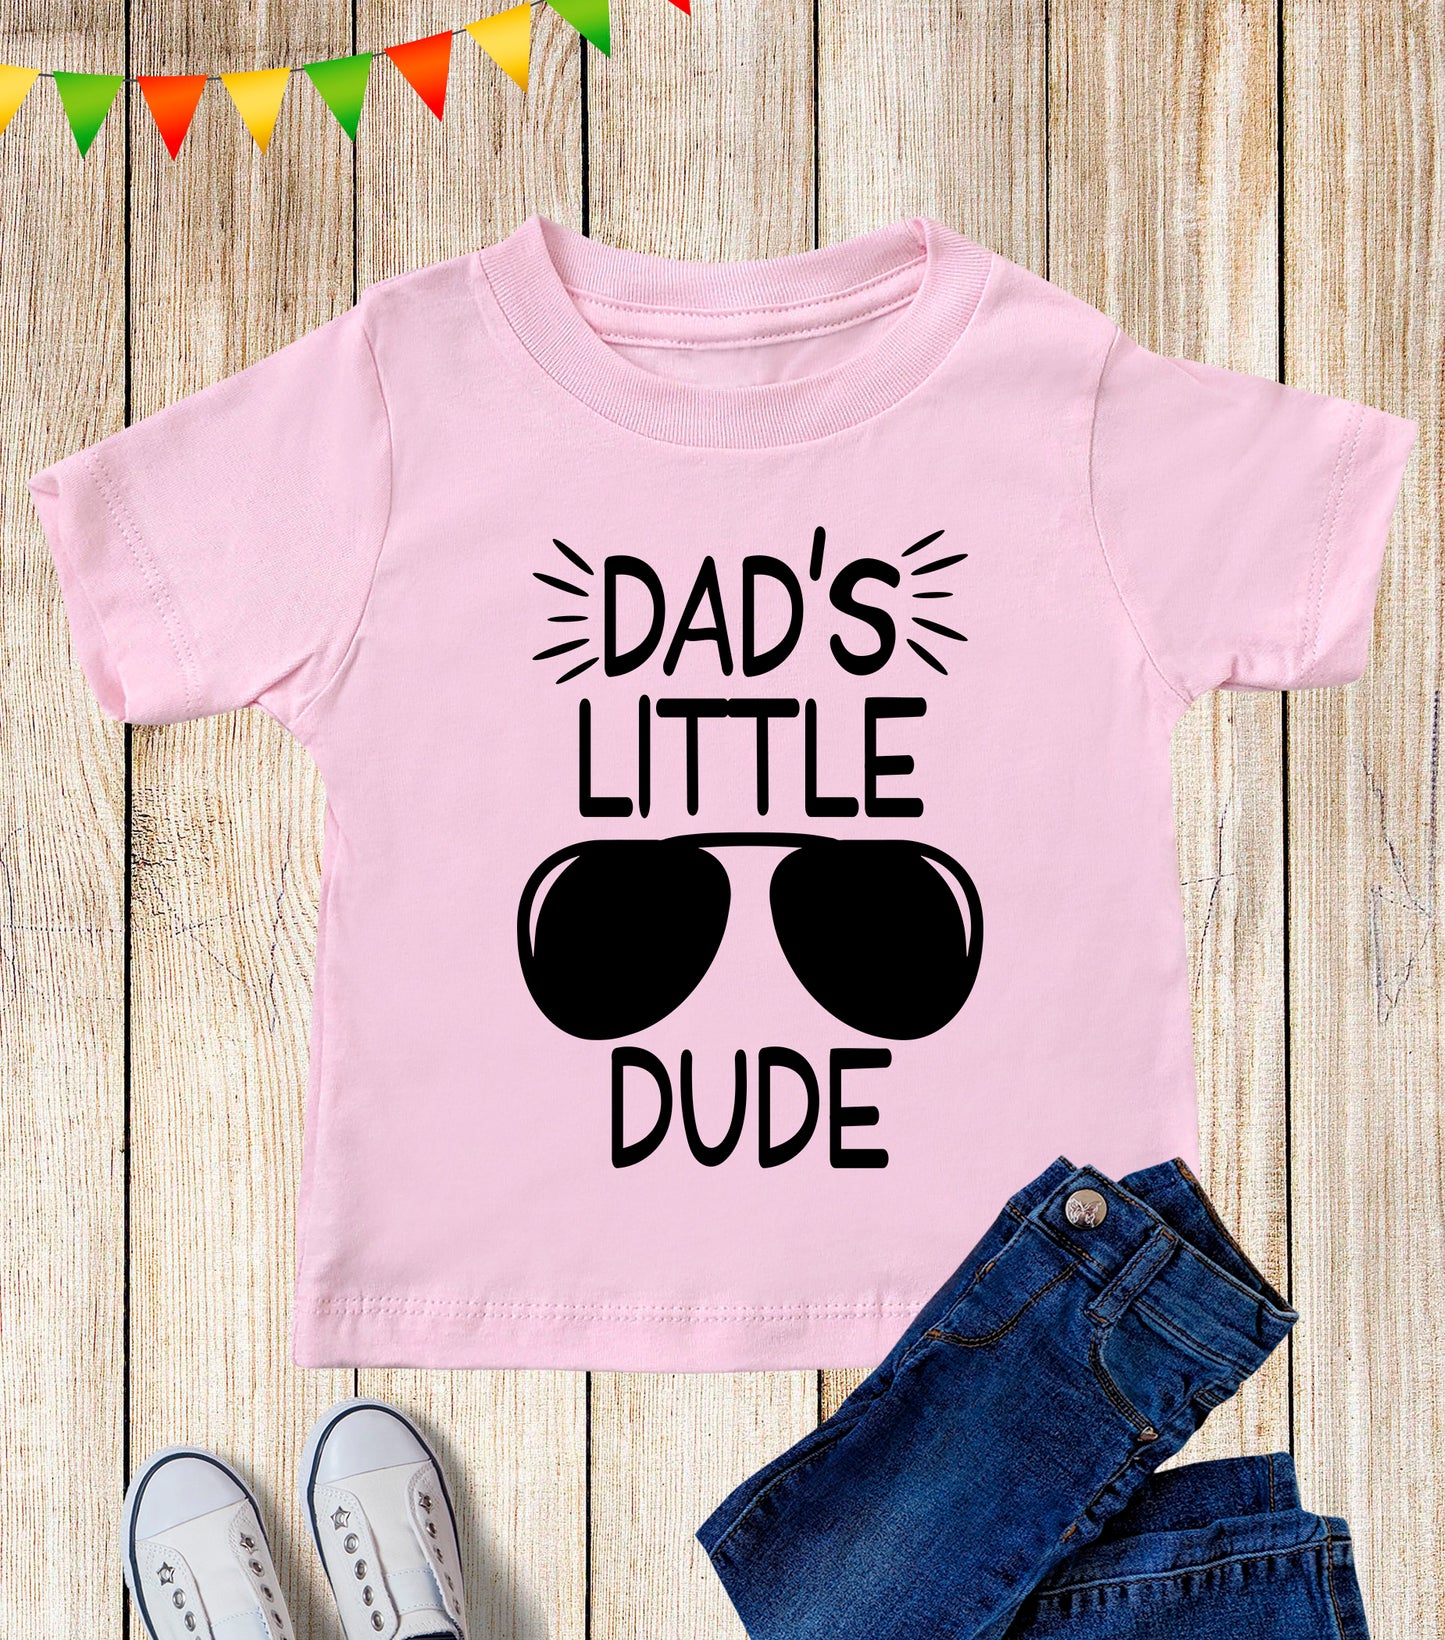 Dad's Little Dude Kids T Shirt